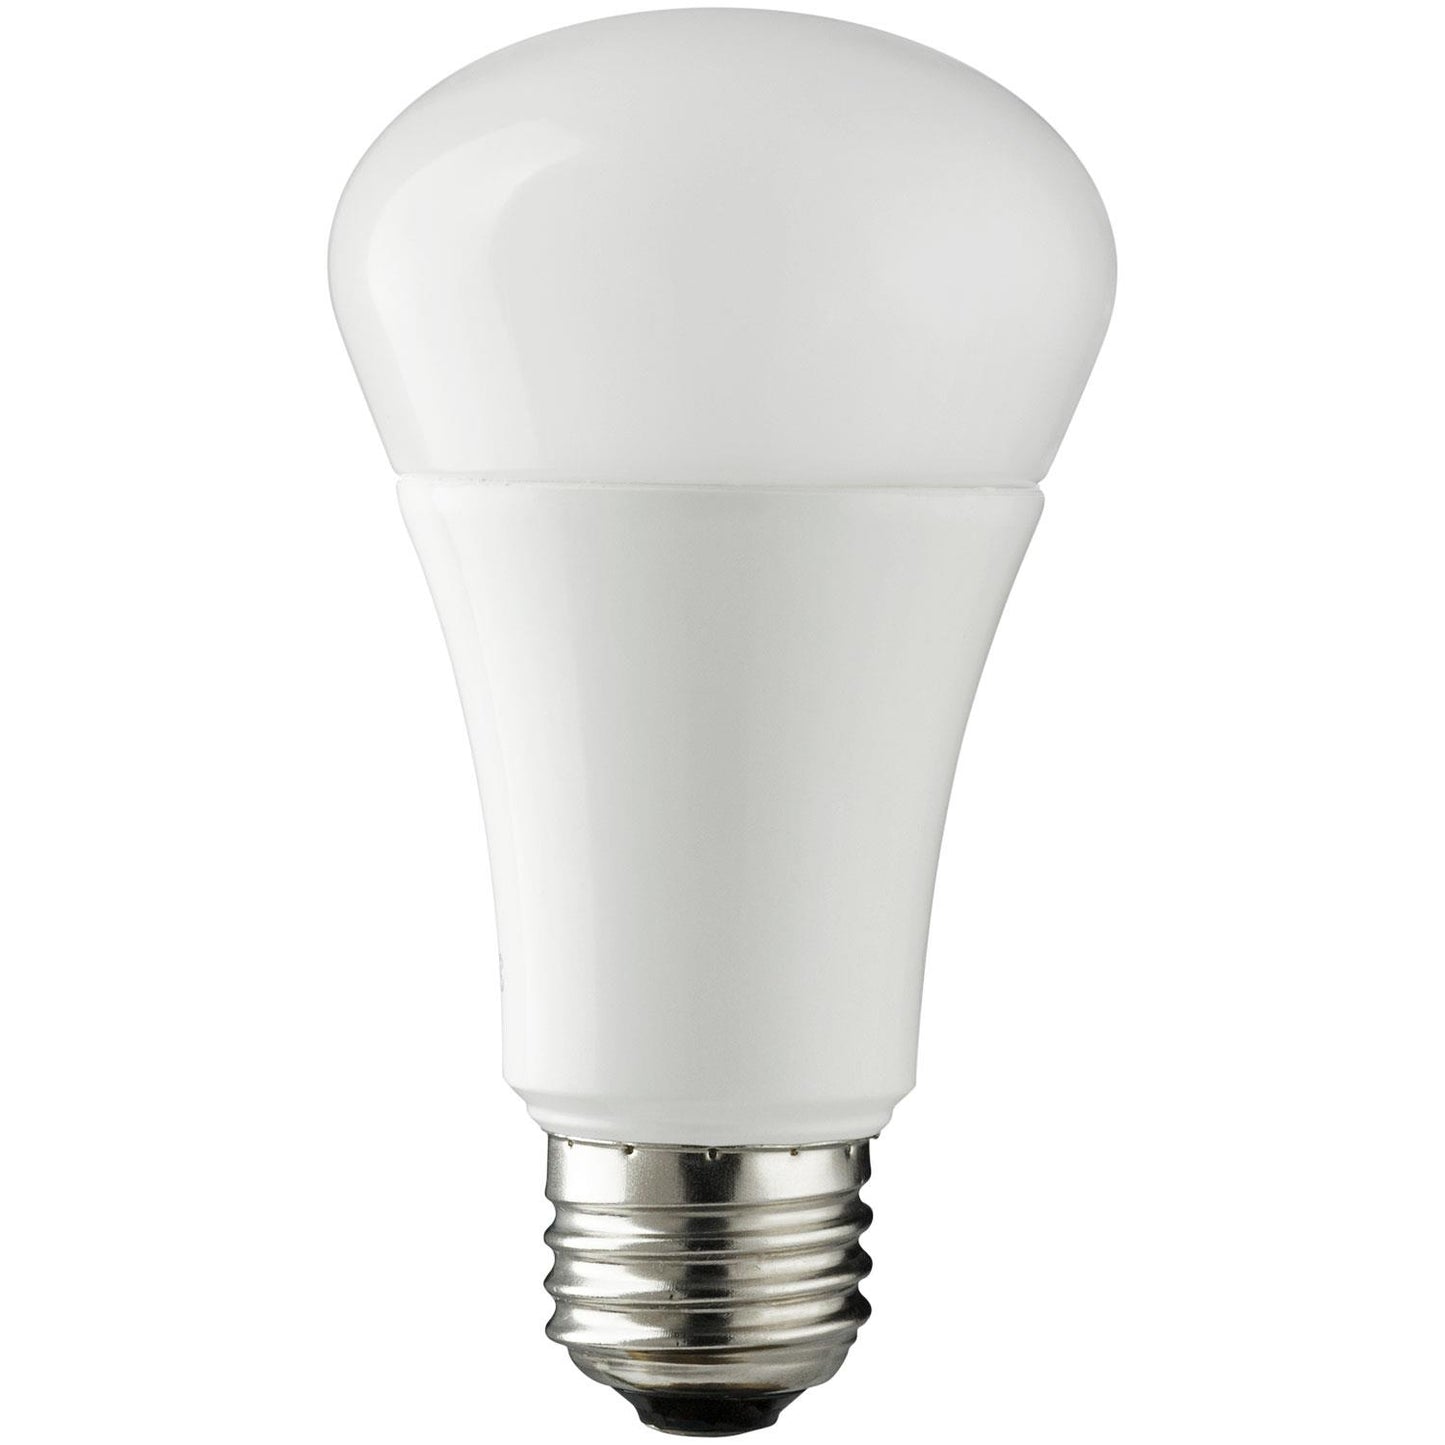 Sunlite LED A Type Household 12W (75W Equivalent) Light Bulb Medium (E26) Base, Daylight